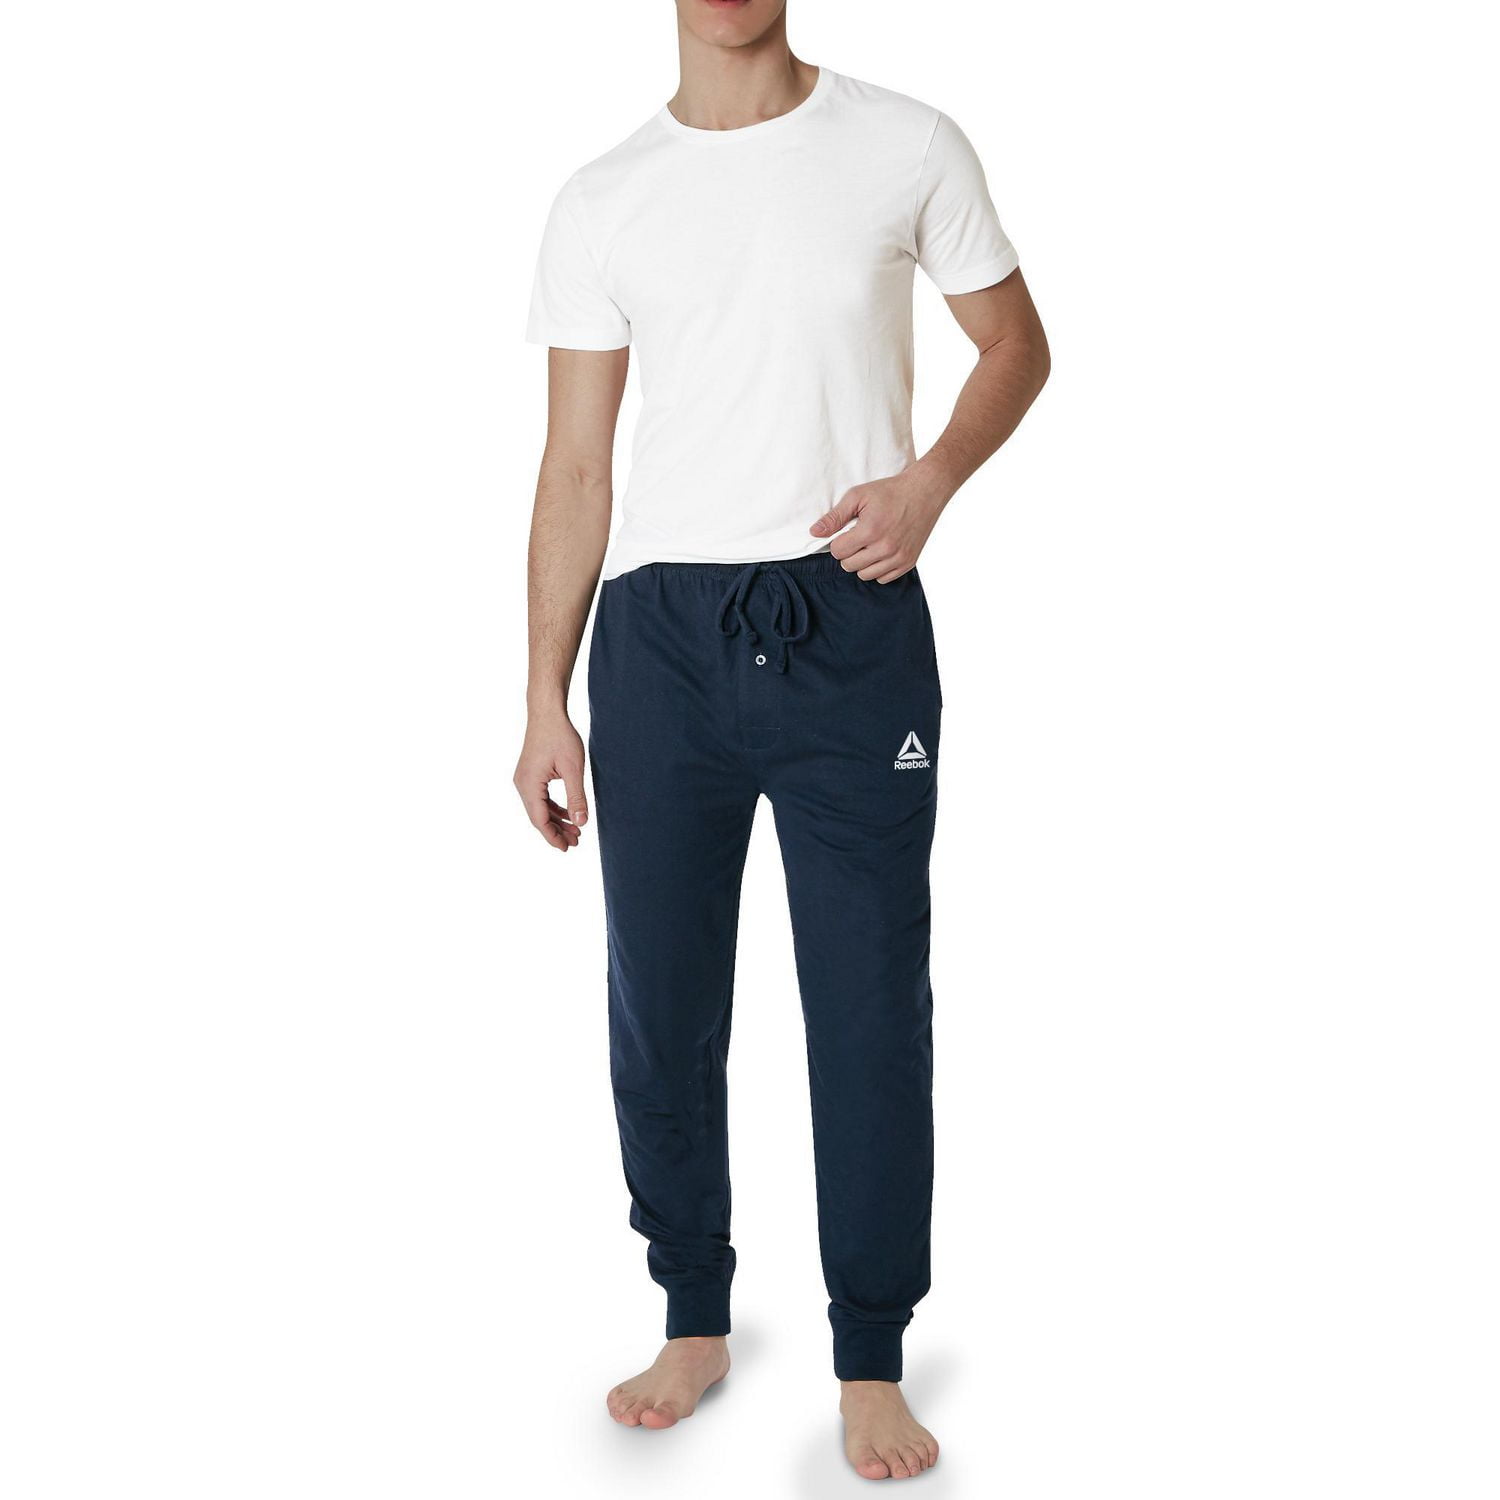 Reebok Men's Pajama Pants - Fleece Jogger Sleep Lounge Pants (Size